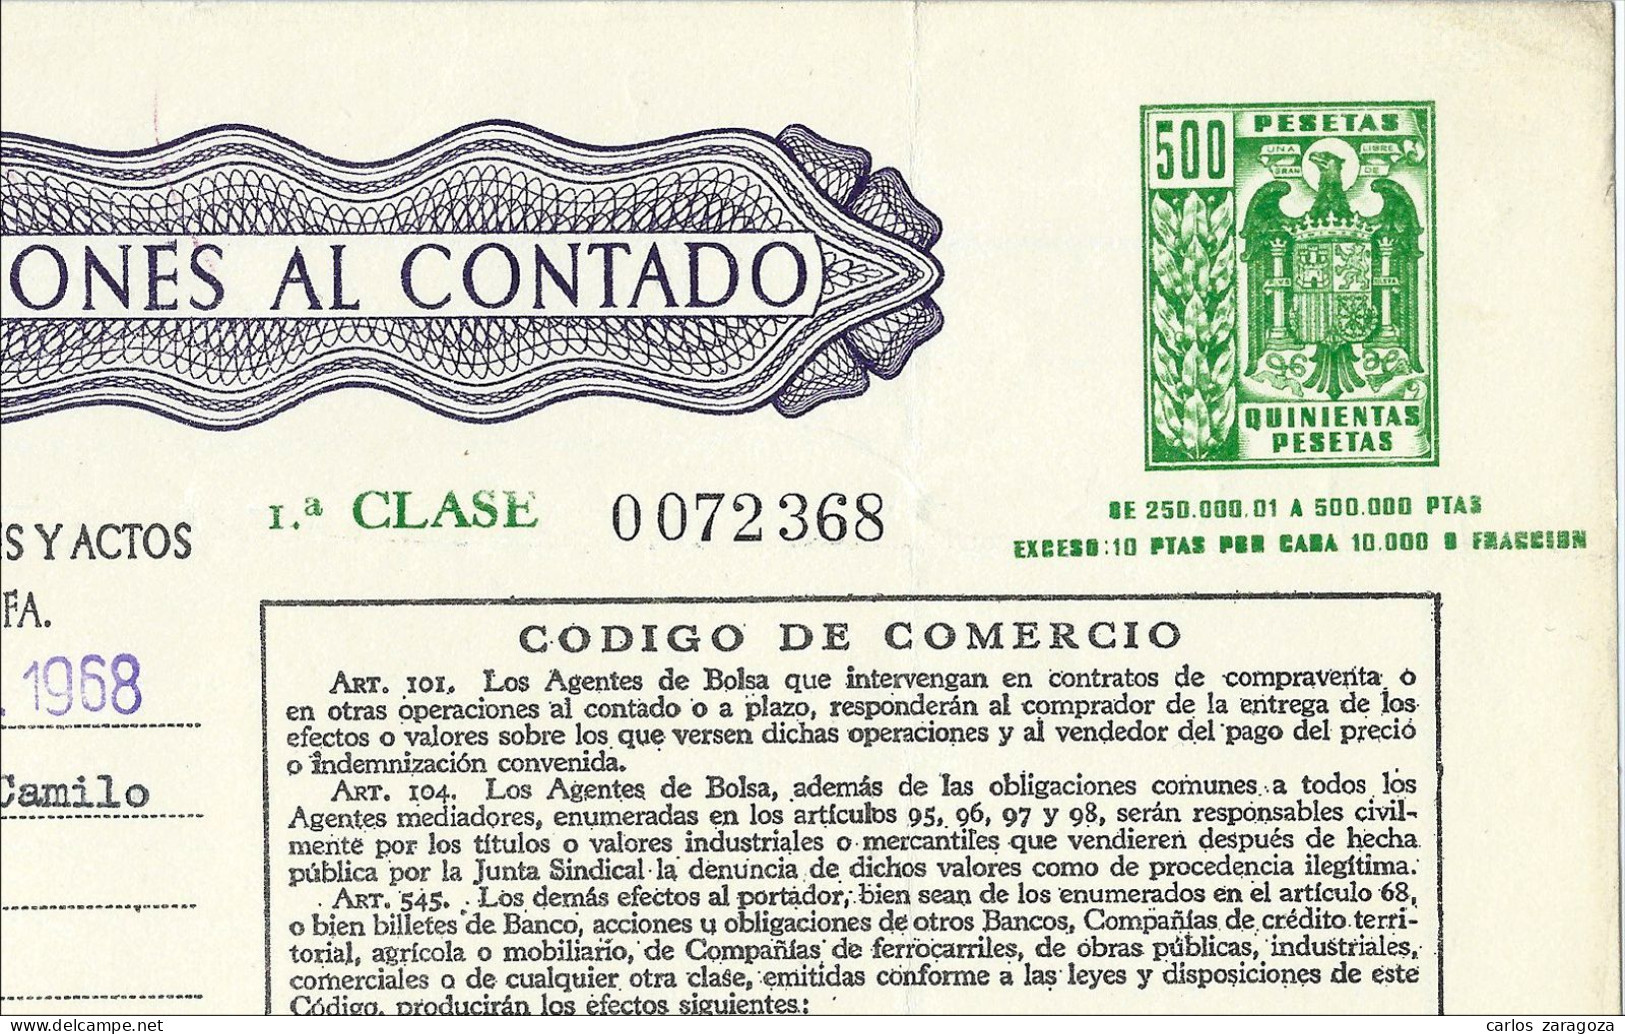 Póliza De OPERACIONES AL CONTADO—Timbre 1a Clase 500 Ptas—Timbrología—Entero Fiscal 1968 - Revenue Stamps